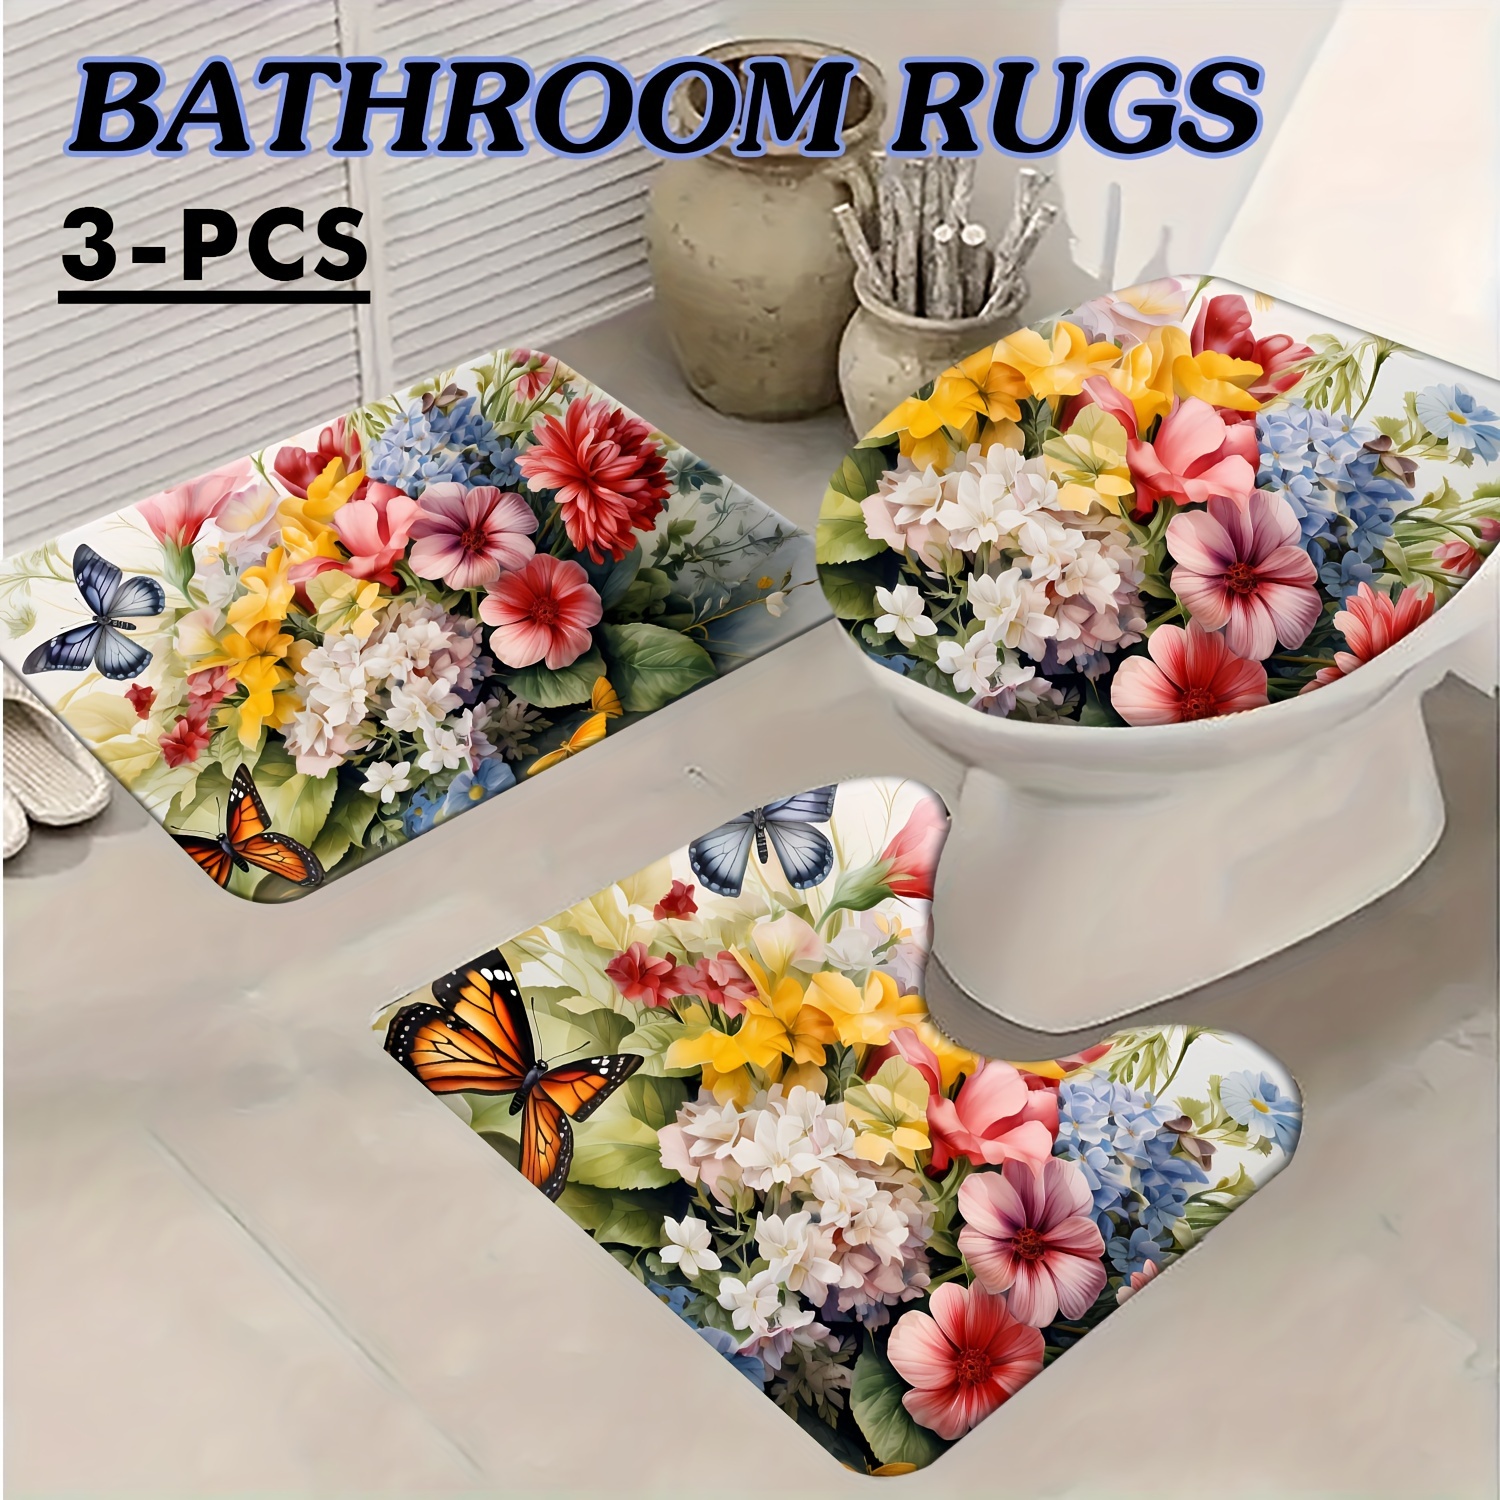 

3pcs Floral Bathroom Mat Set, Absorbent & Quick-drying Bathroom Floor Carpet, Non-slip & Non-shedding U-shaped Contour Rug & Toilet Lid Mat, For Bathroom Bathtub Toilet, Ideal Bathroom Accessories